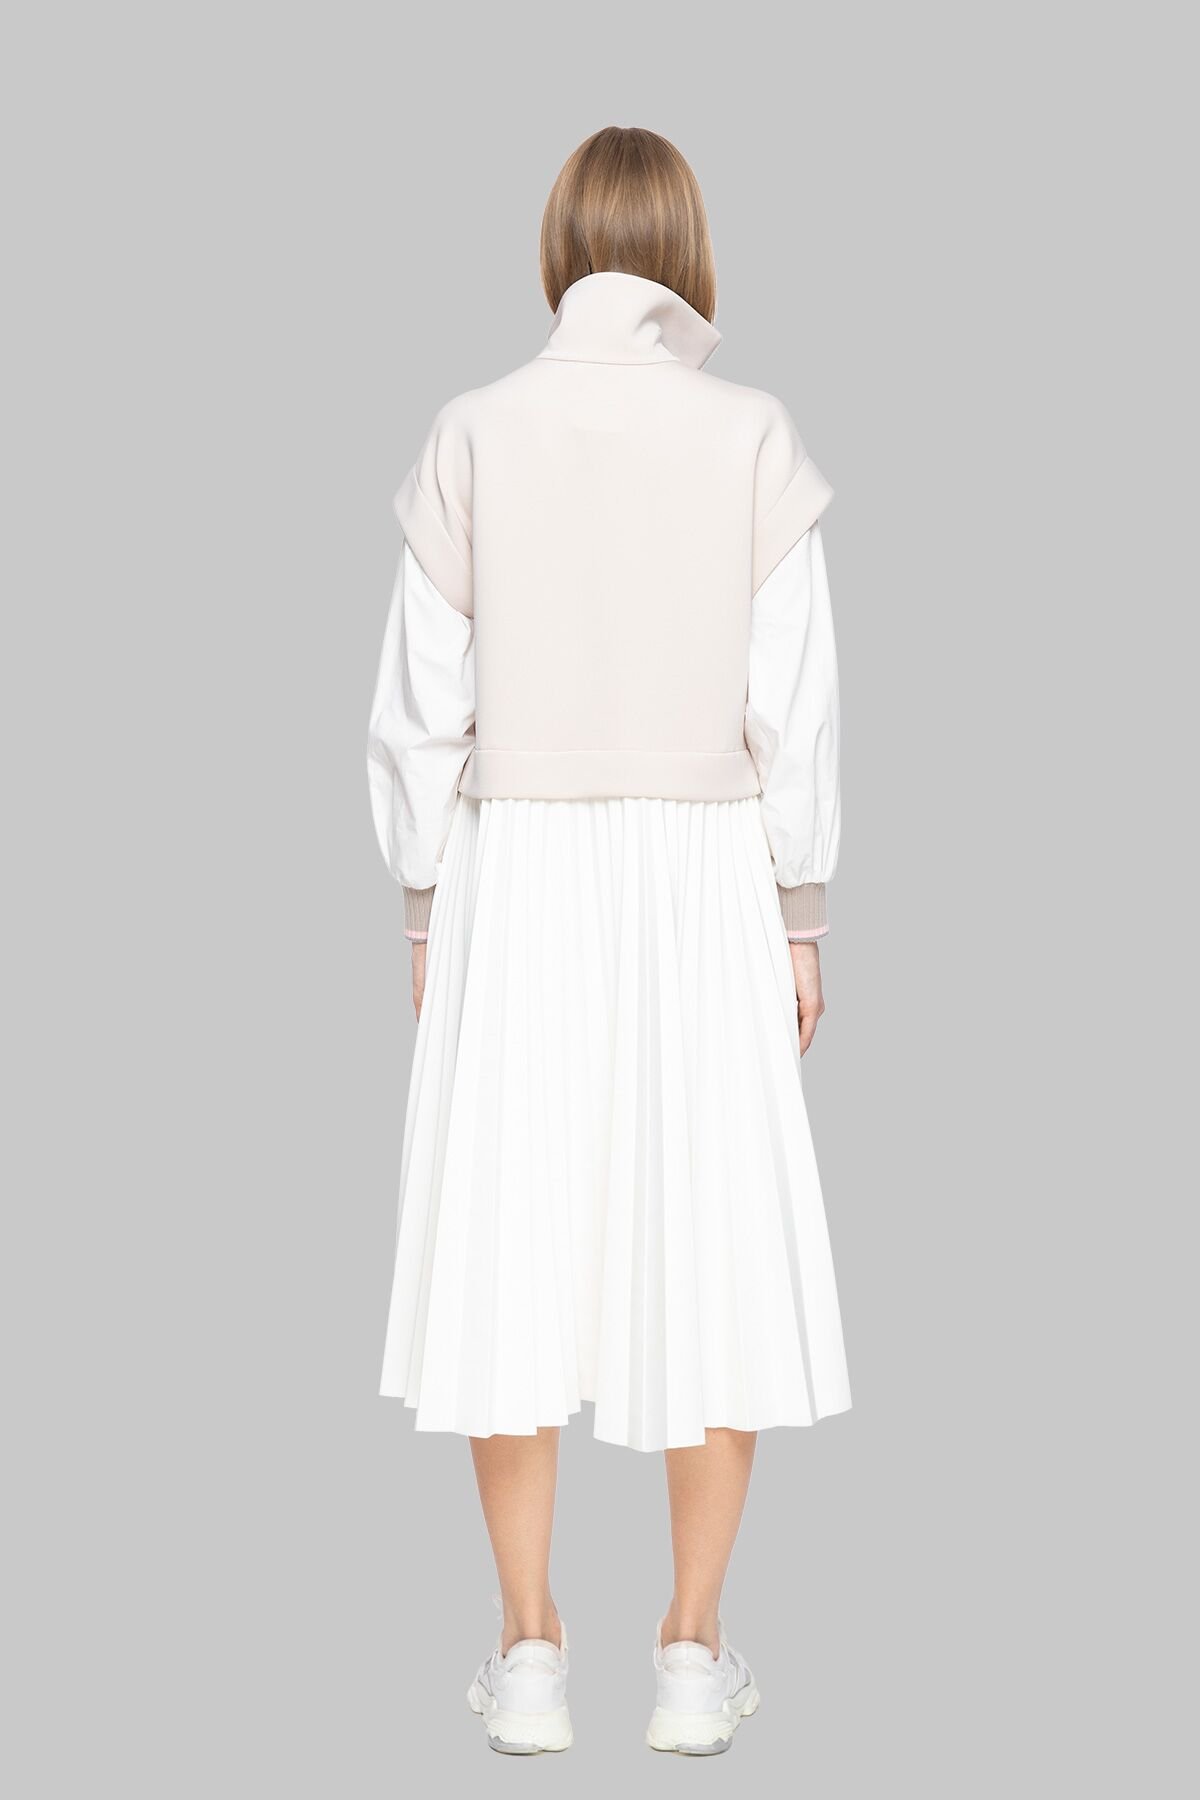 Pleat Skirt Detailed Zipper Dress